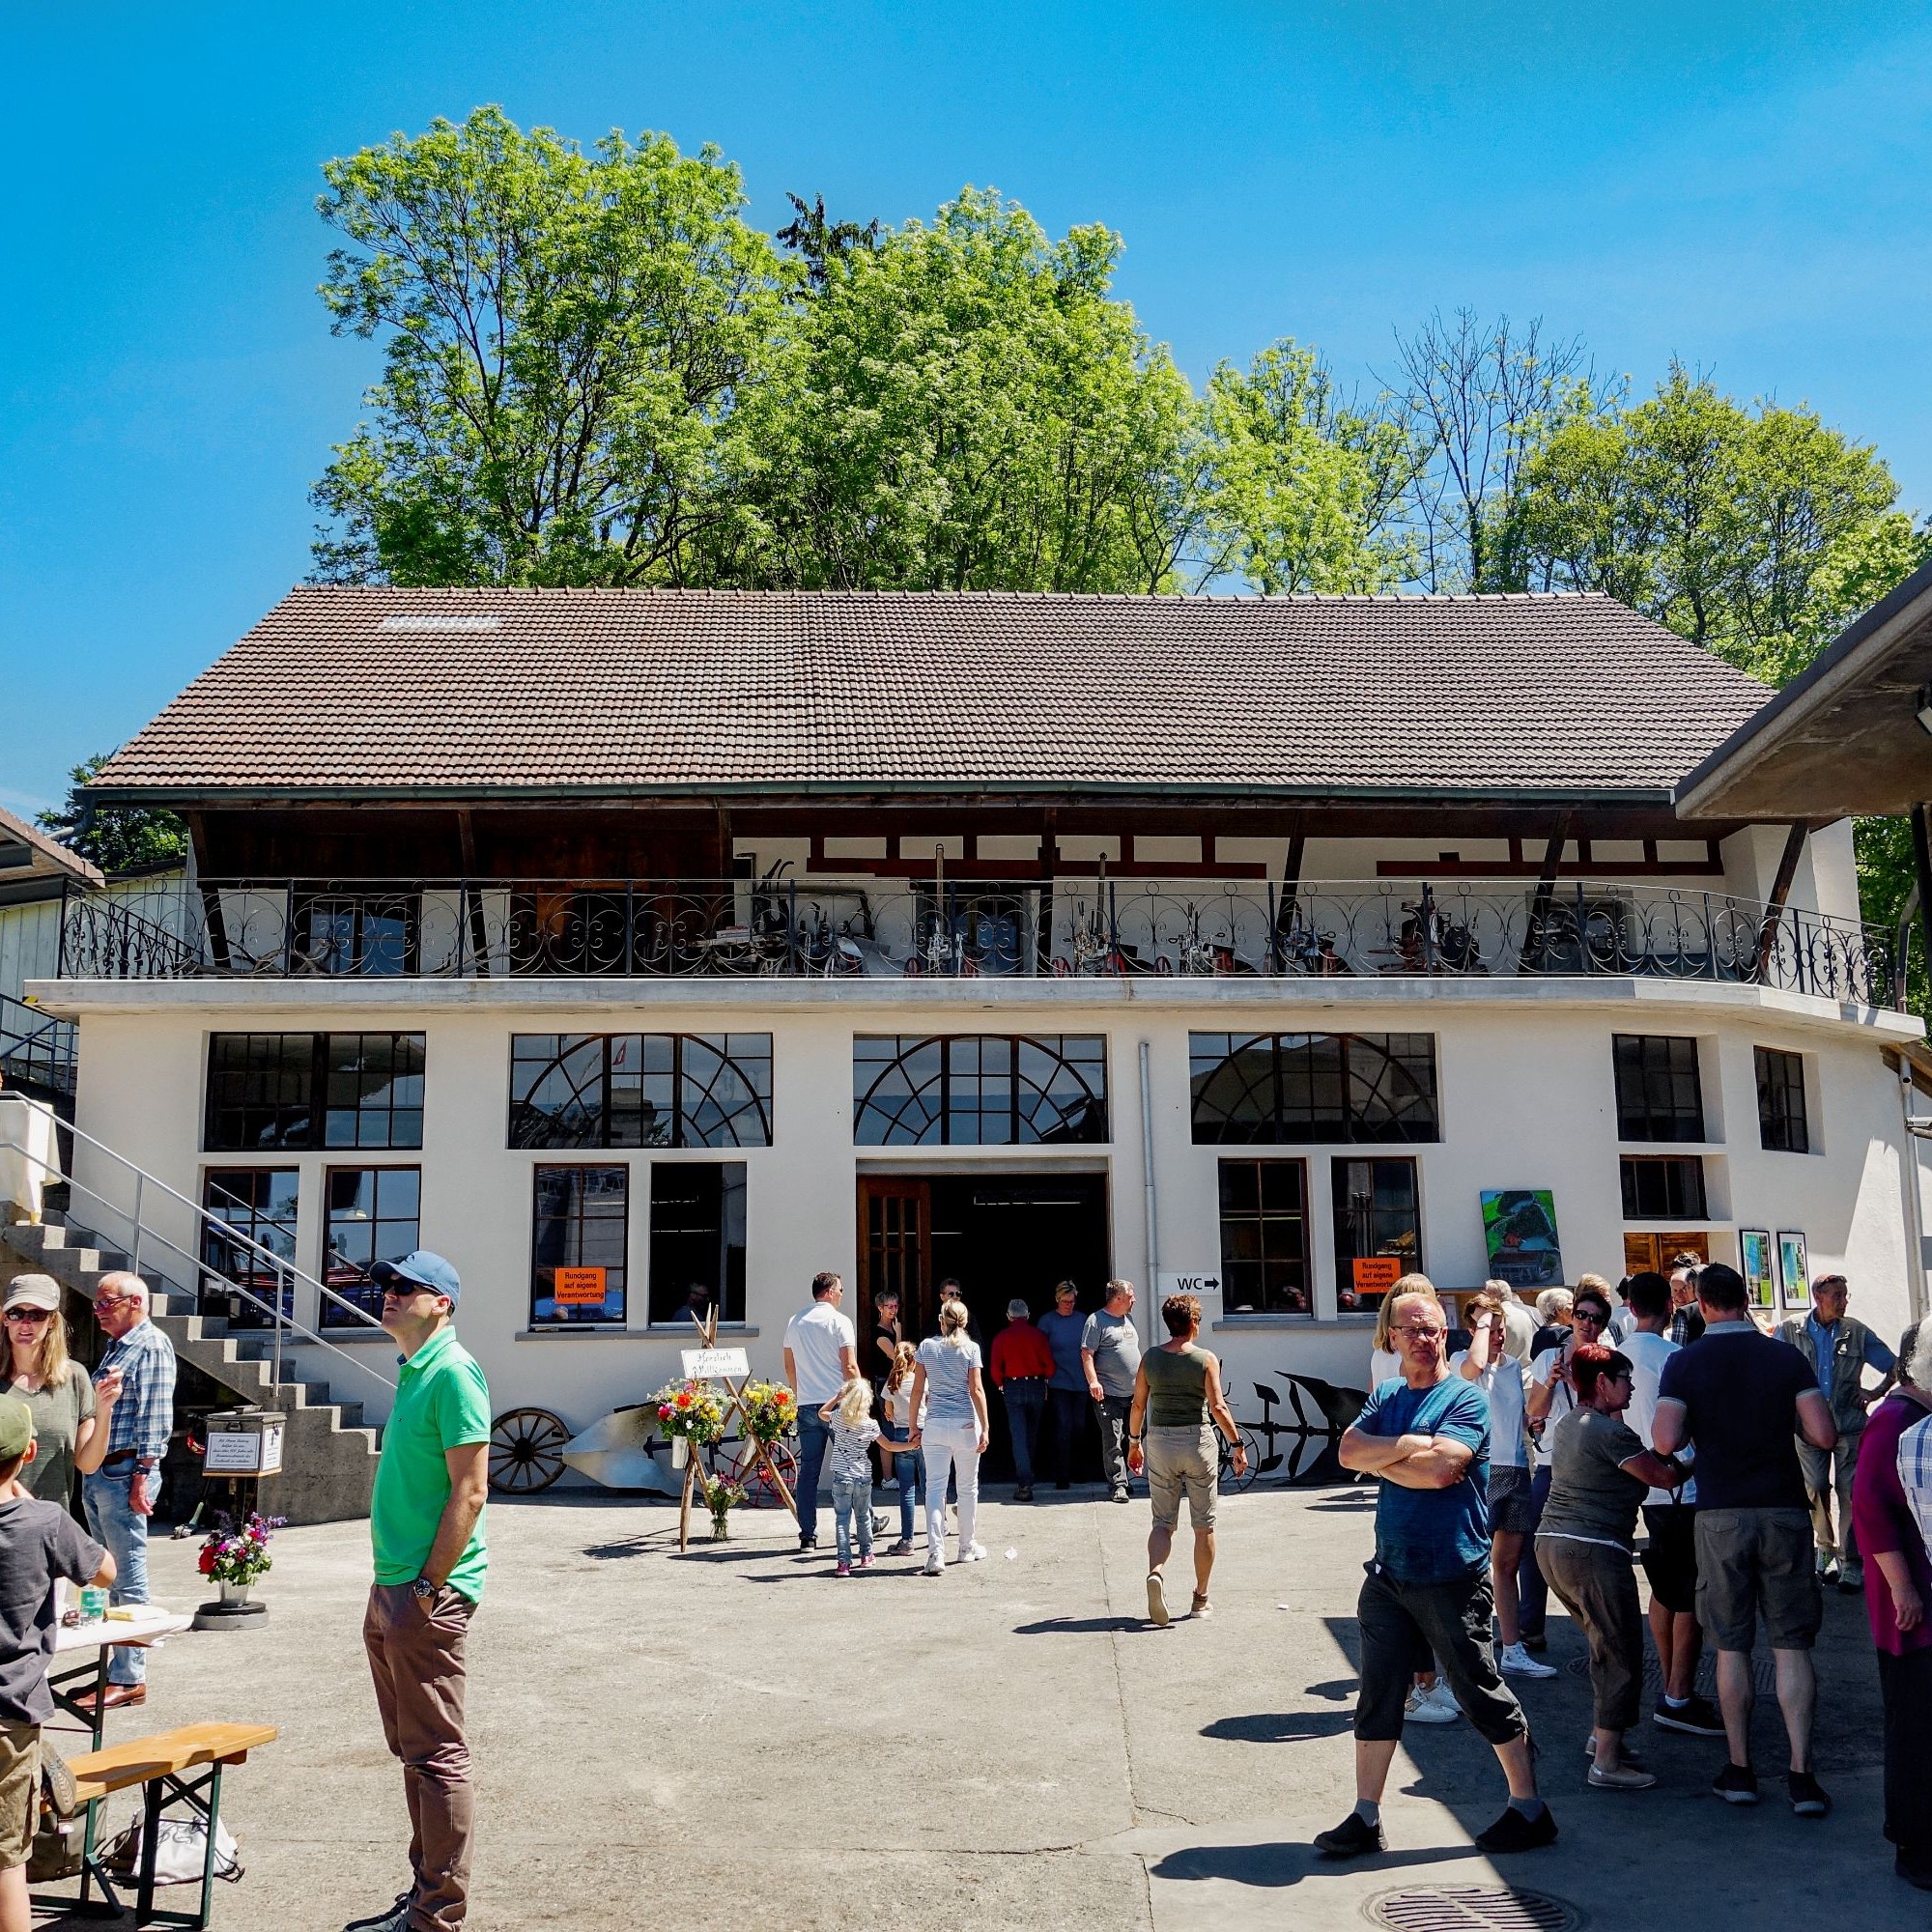 Am 1. Juni wurde die restaurierte historische Hammerschmiede Seengen erstmals dem Publikum vorgestellt. Auf Anfrage werden Besichtigungen angeboten.